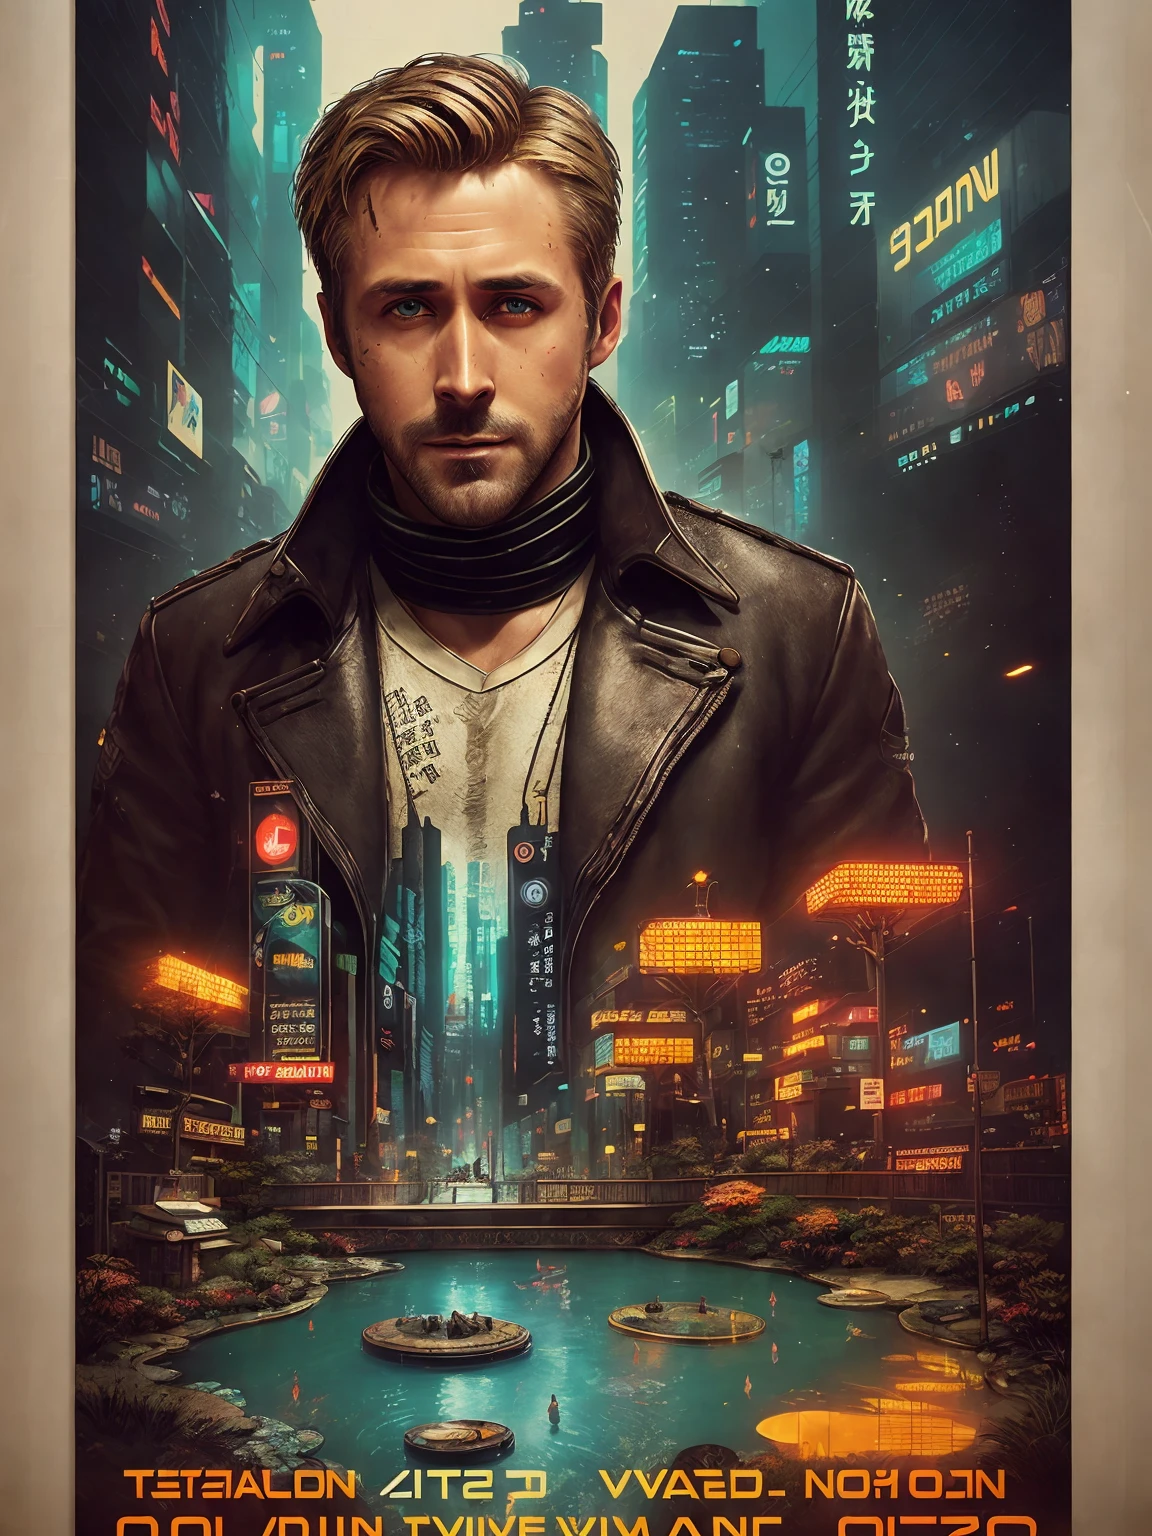 Ryan Gosling, de 40 años, de Blade Runner 2049, fallo digital, (póster:1.6), póster on wall, movie póster, retrato, ((cambio de inclinación))
vistiendo un viejo abrigo de piel de oveja marrón con colar de lana sucia,
(jardín de rocas japonés y estanque:1.2), carpa koi, (((Bonsái))), ((estilo interior de alta tecnología y futurismo)), (((Cara muy detallada))),
((textura ultradetallada de la cara y la piel)), intrincadamente detallado, finos detalles, hiperdetallado, trazado de rayos, dispersión subsuperficial, iluminación suave y difusa, poca profundidad de campo, por Oliver Wetter,